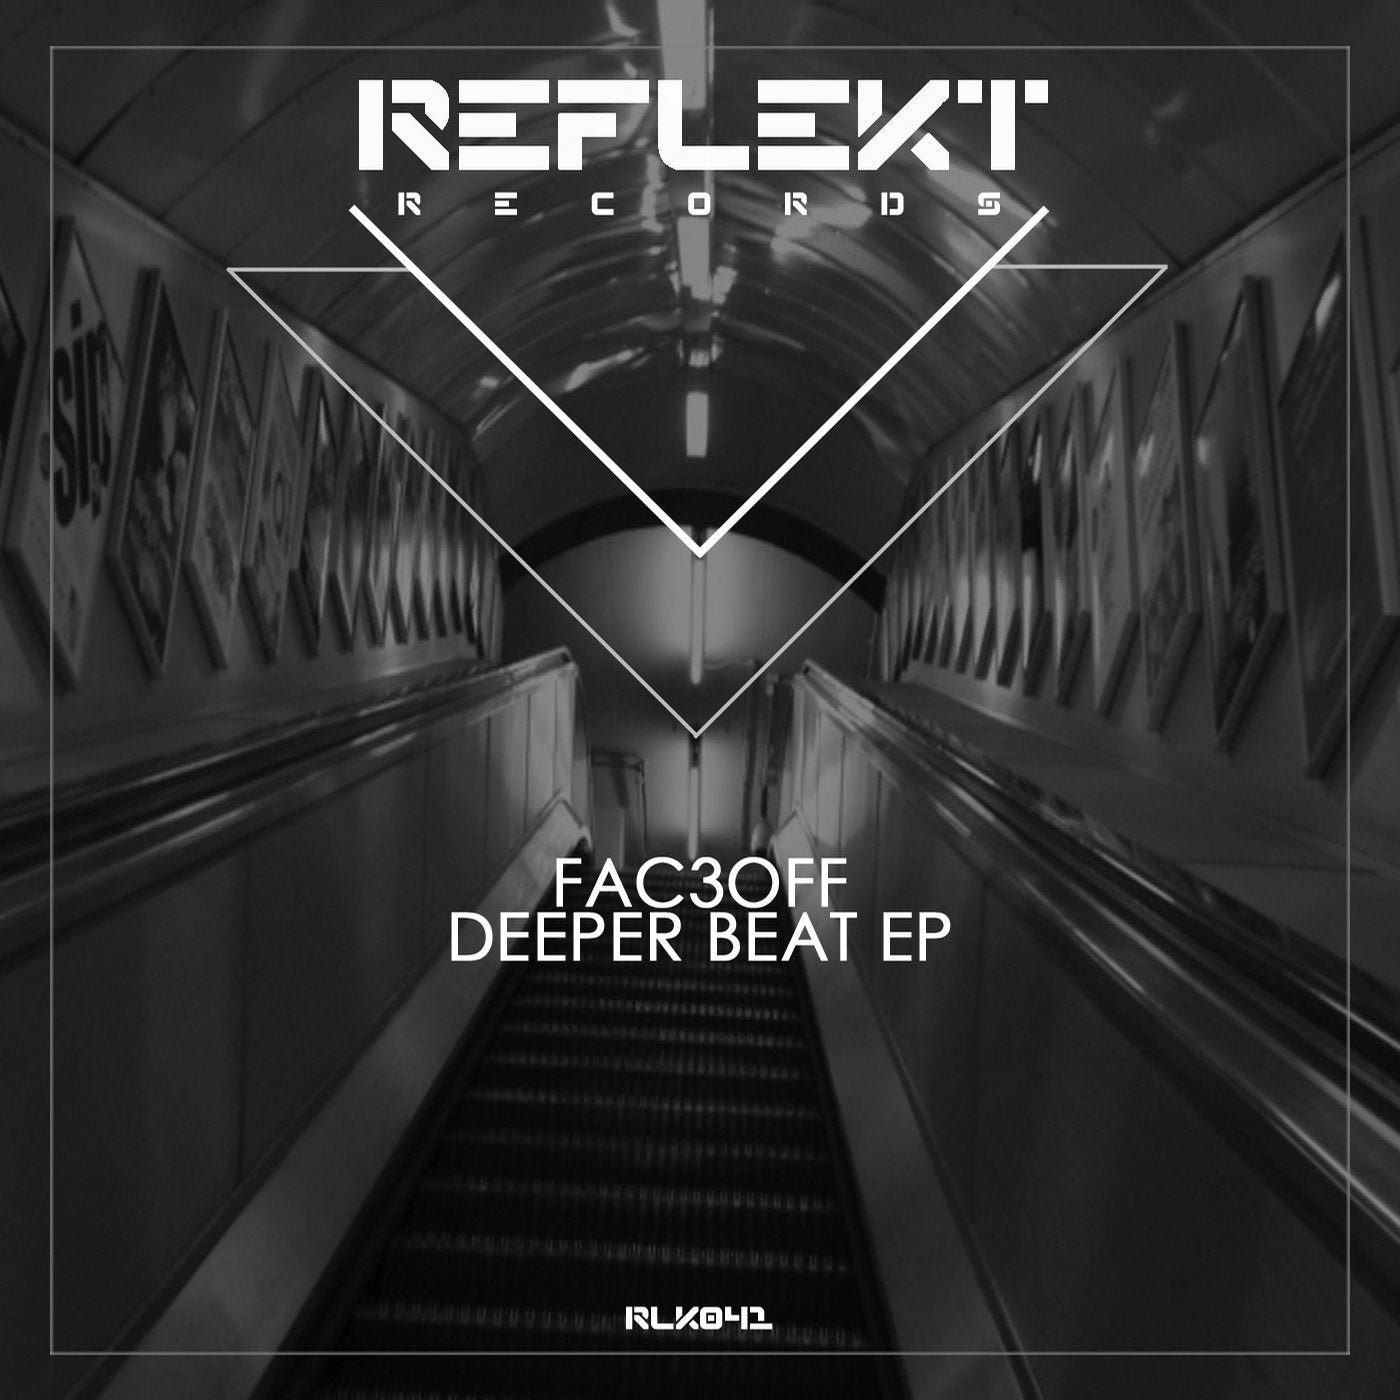 Deeper Beat EP